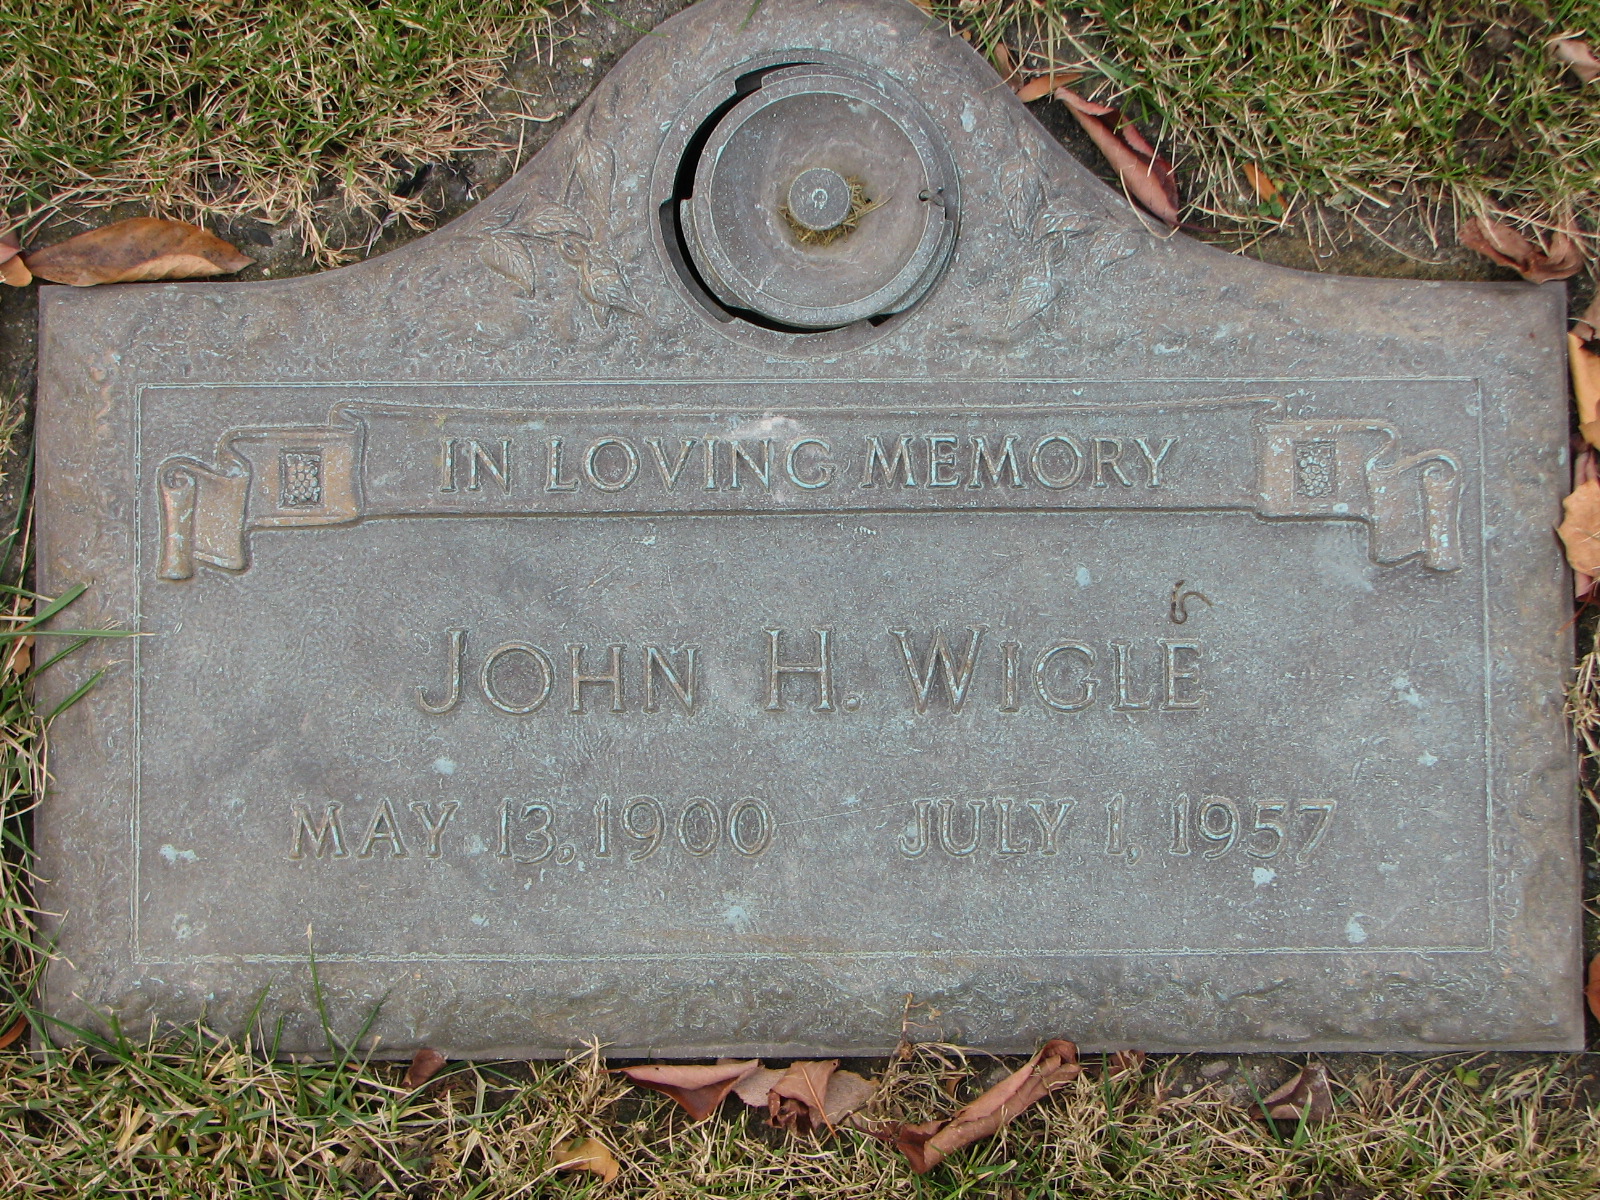 John H. Wigle 1900-1957